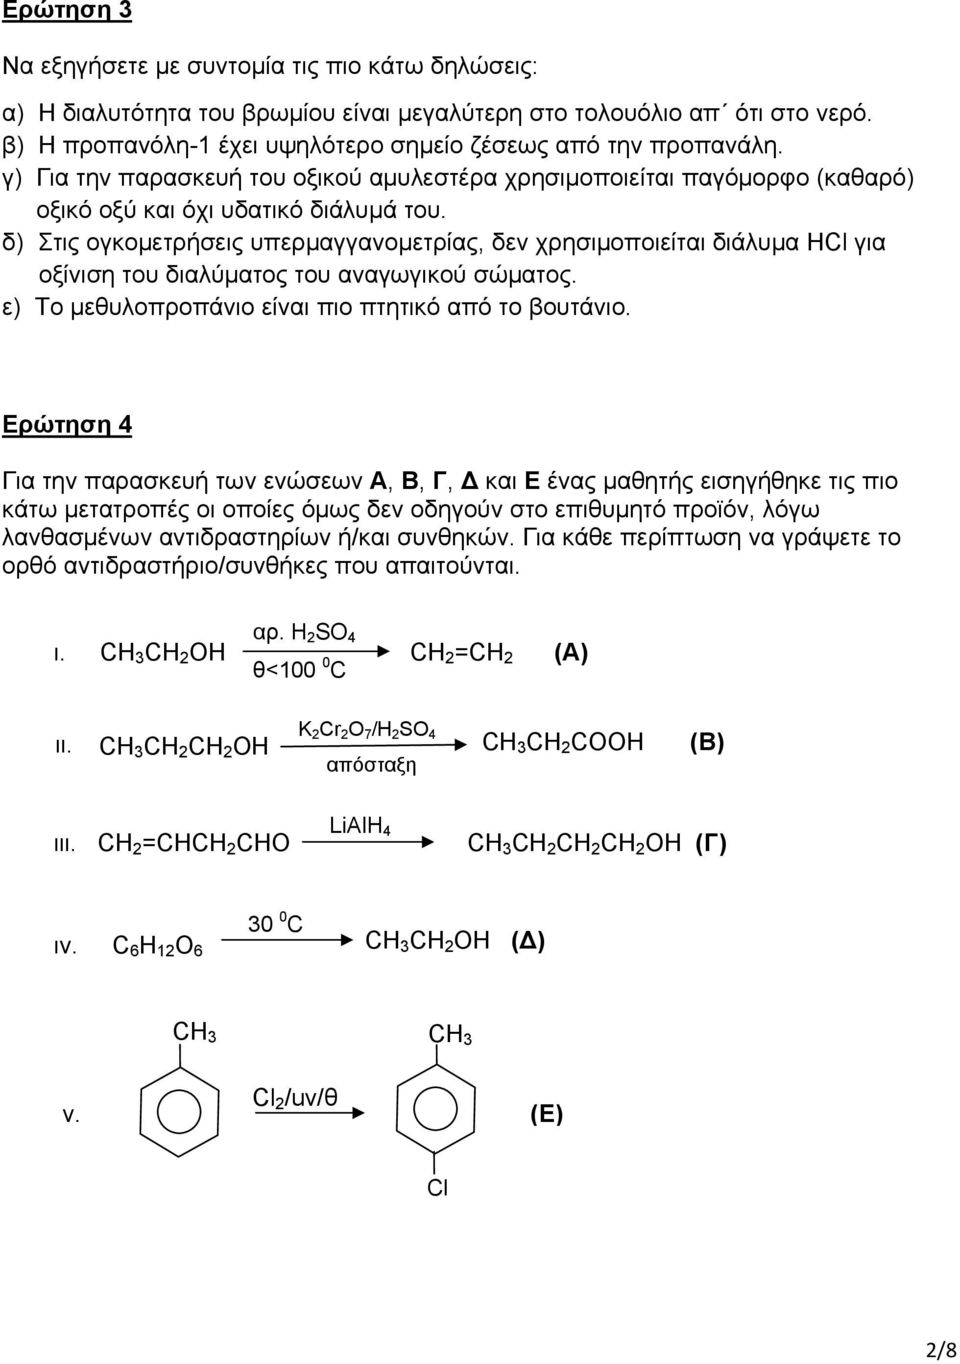 δ) Στις ογκομετρήσεις υπερμαγγανομετρίας, δεν χρησιμοποιείται διάλυμα HCl για οξίνιση του διαλύματος του αναγωγικού σώματος. ε) Το μεθυλοπροπάνιο είναι πιο πτητικό από το βουτάνιο.